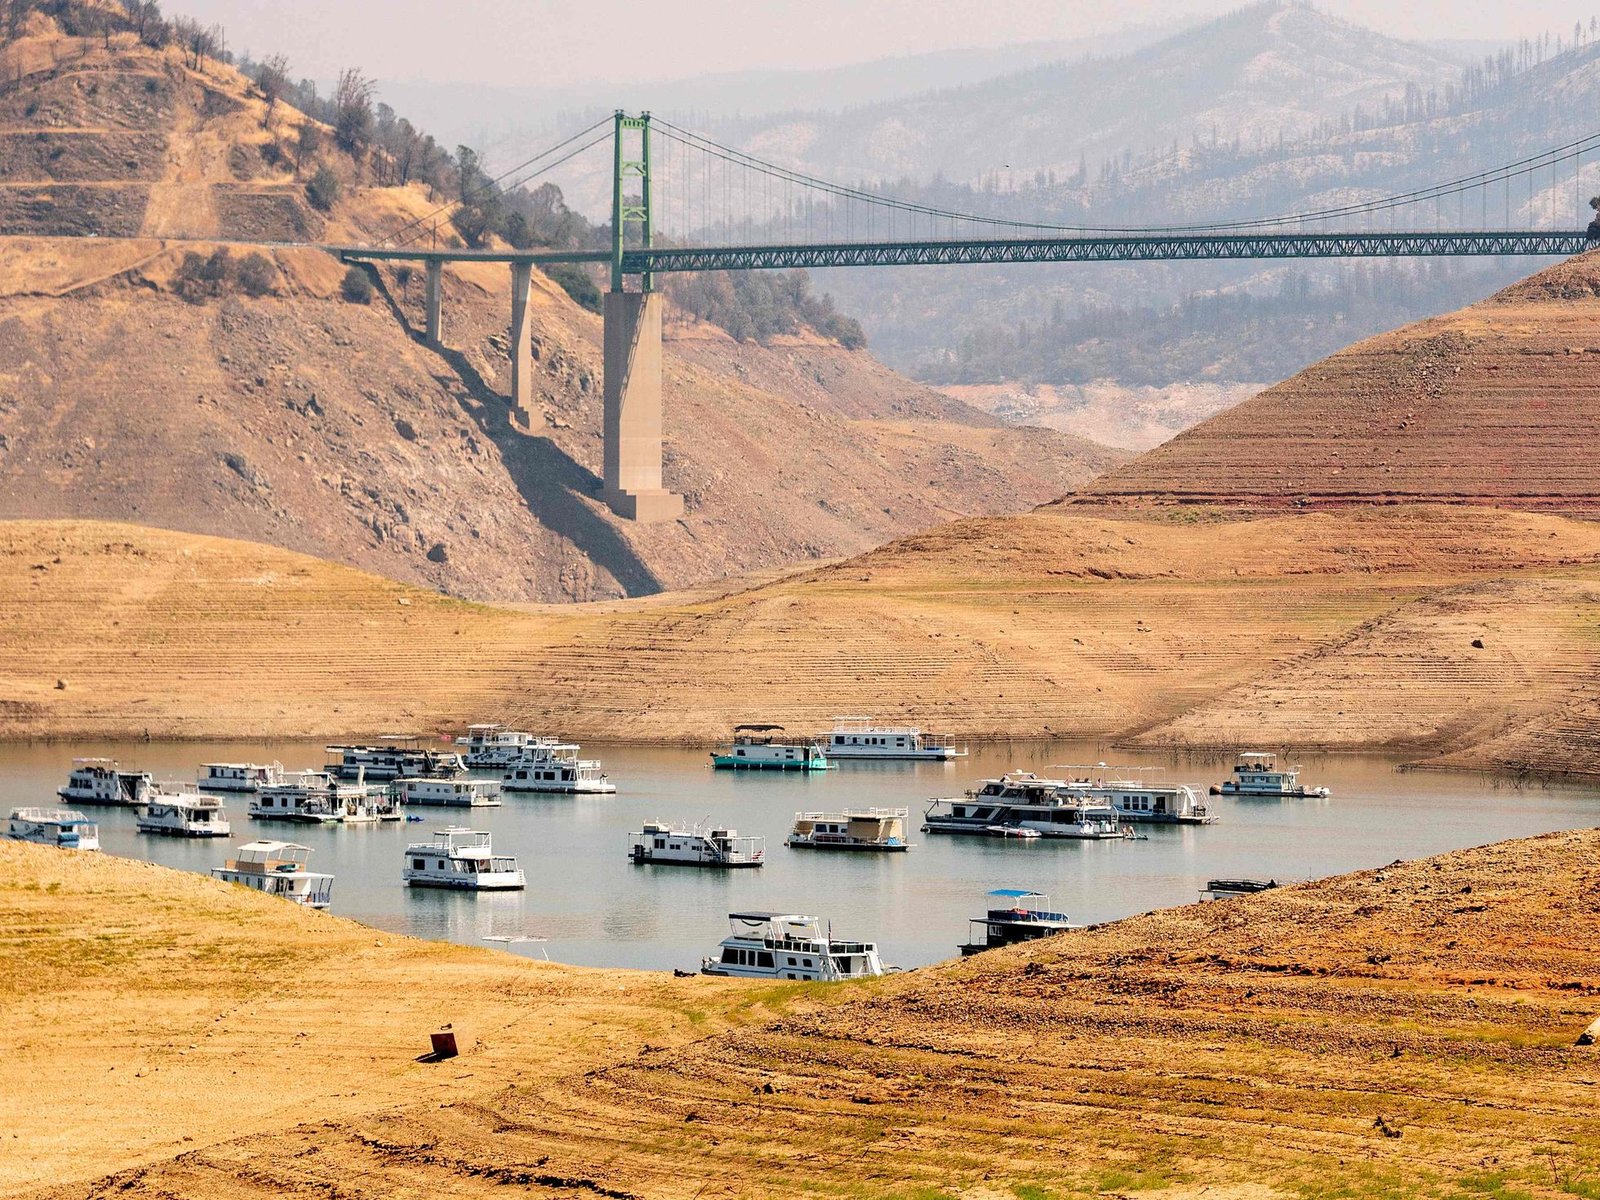 La sequía en california podría reducir la energía hidroeléctrica del estado a la mitad este verano boreal